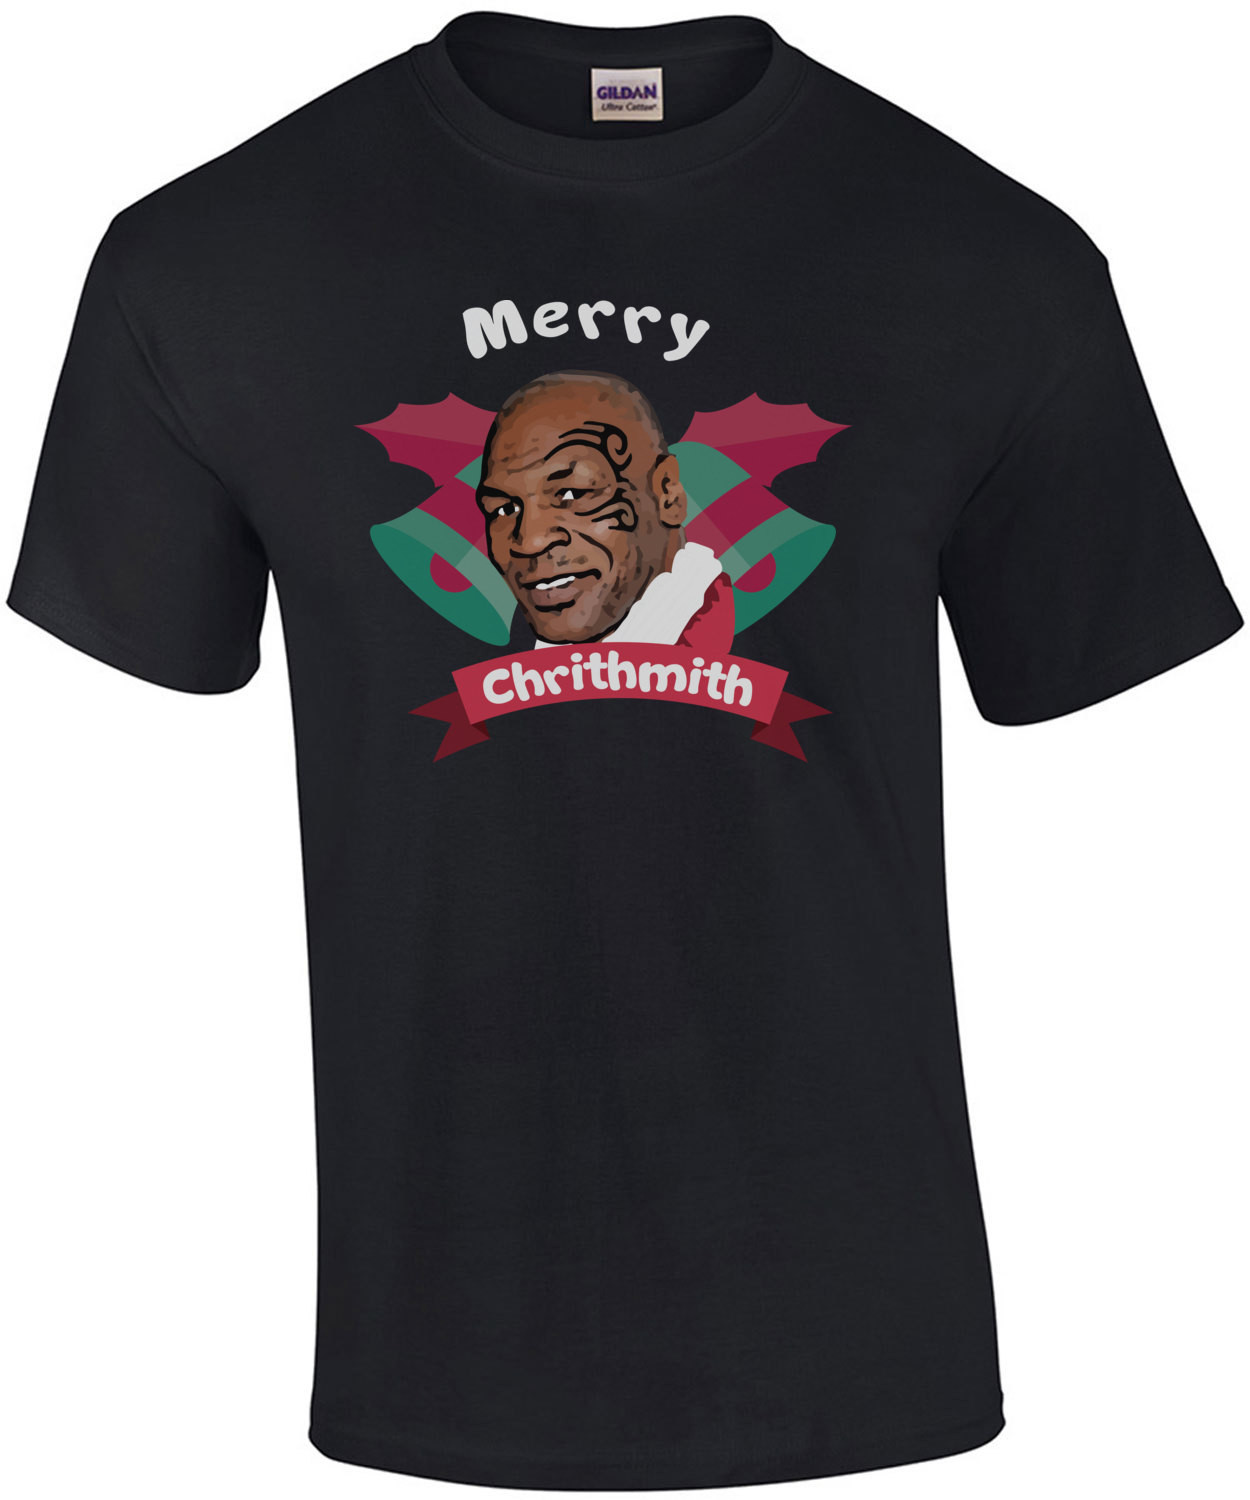 Merry Chrithmith - Mike Tyson Christmas T-Shirt